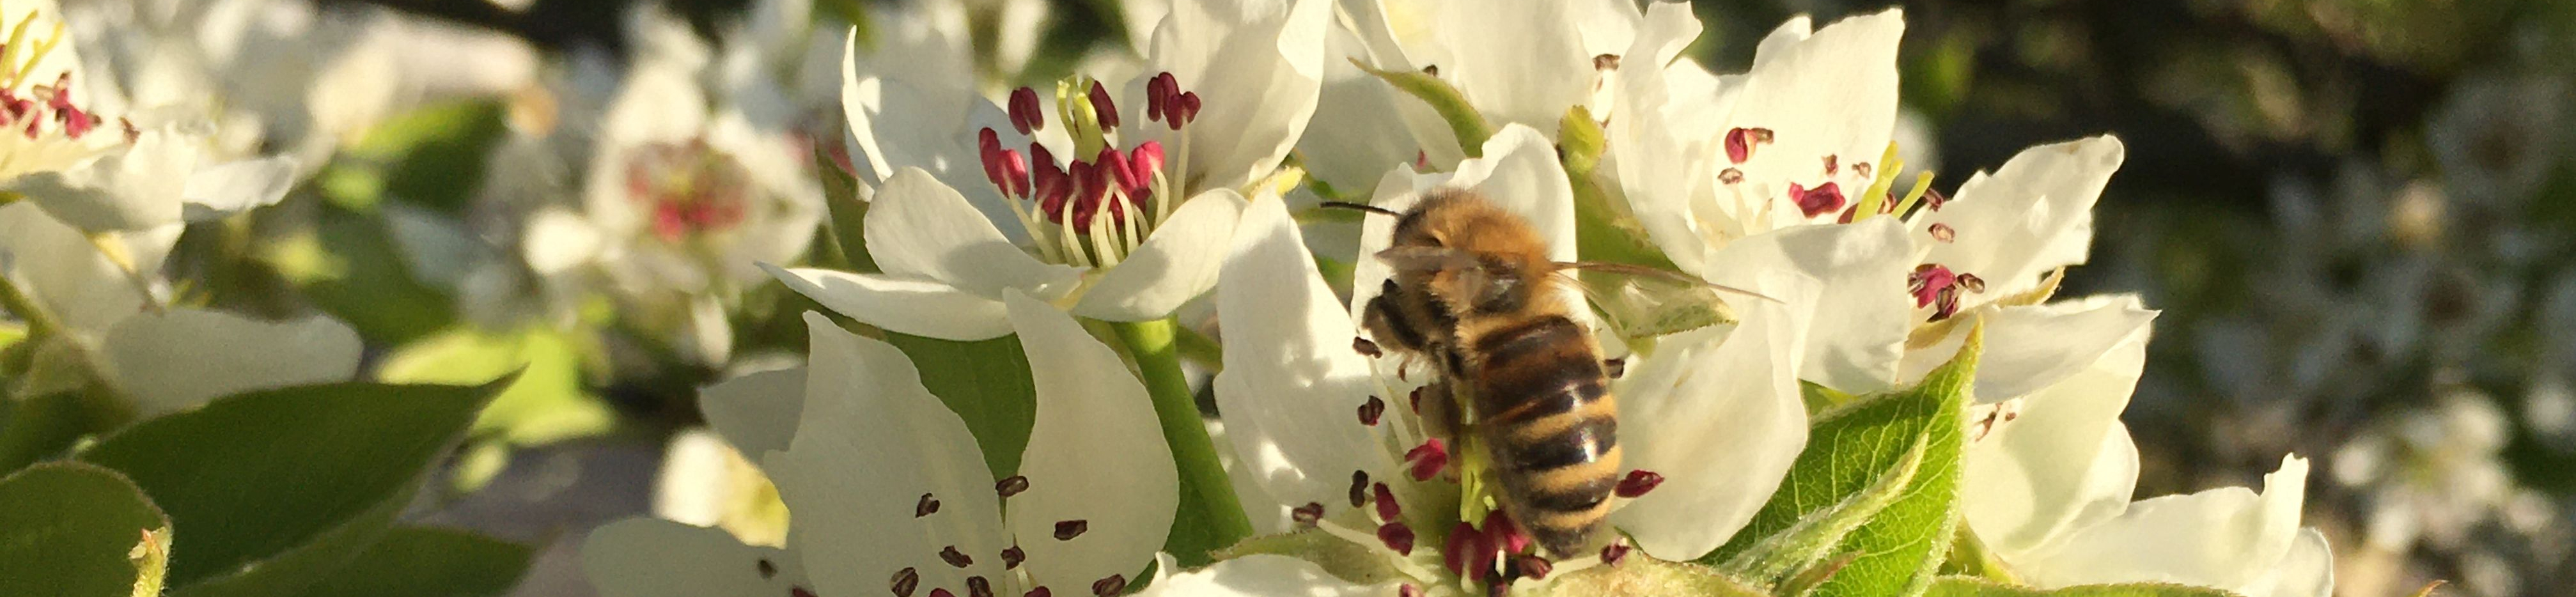 Biene in Blüte der Nashi Birne